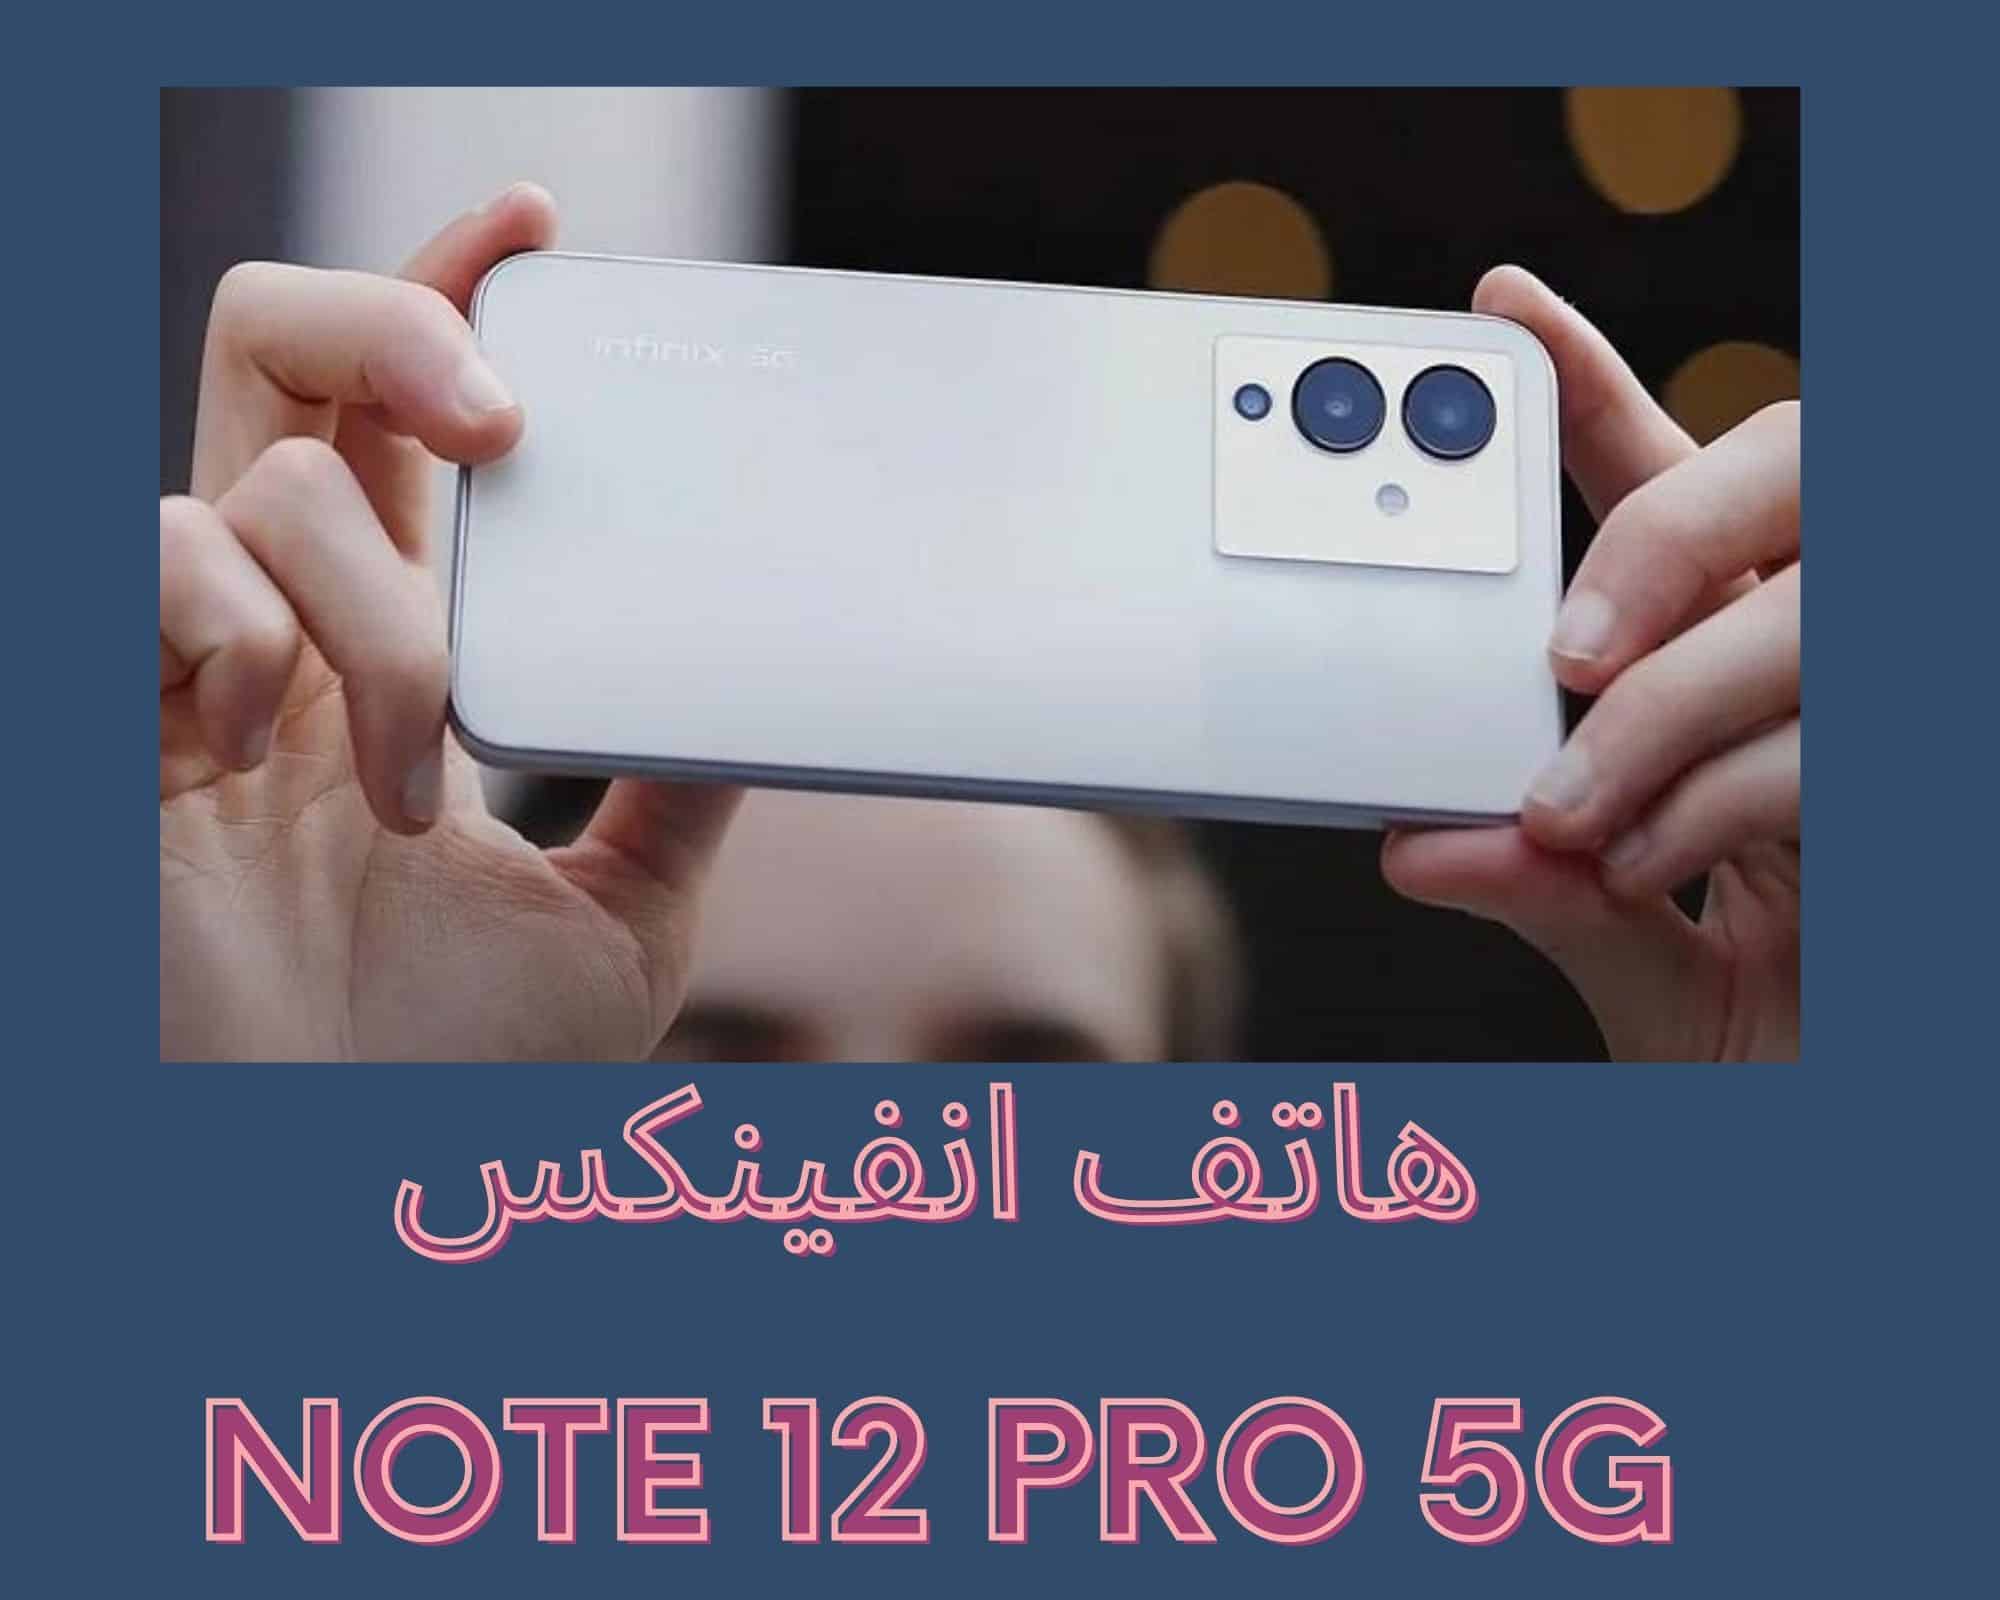 هاتف انفينكس الجديد Note 12 Pro 5G